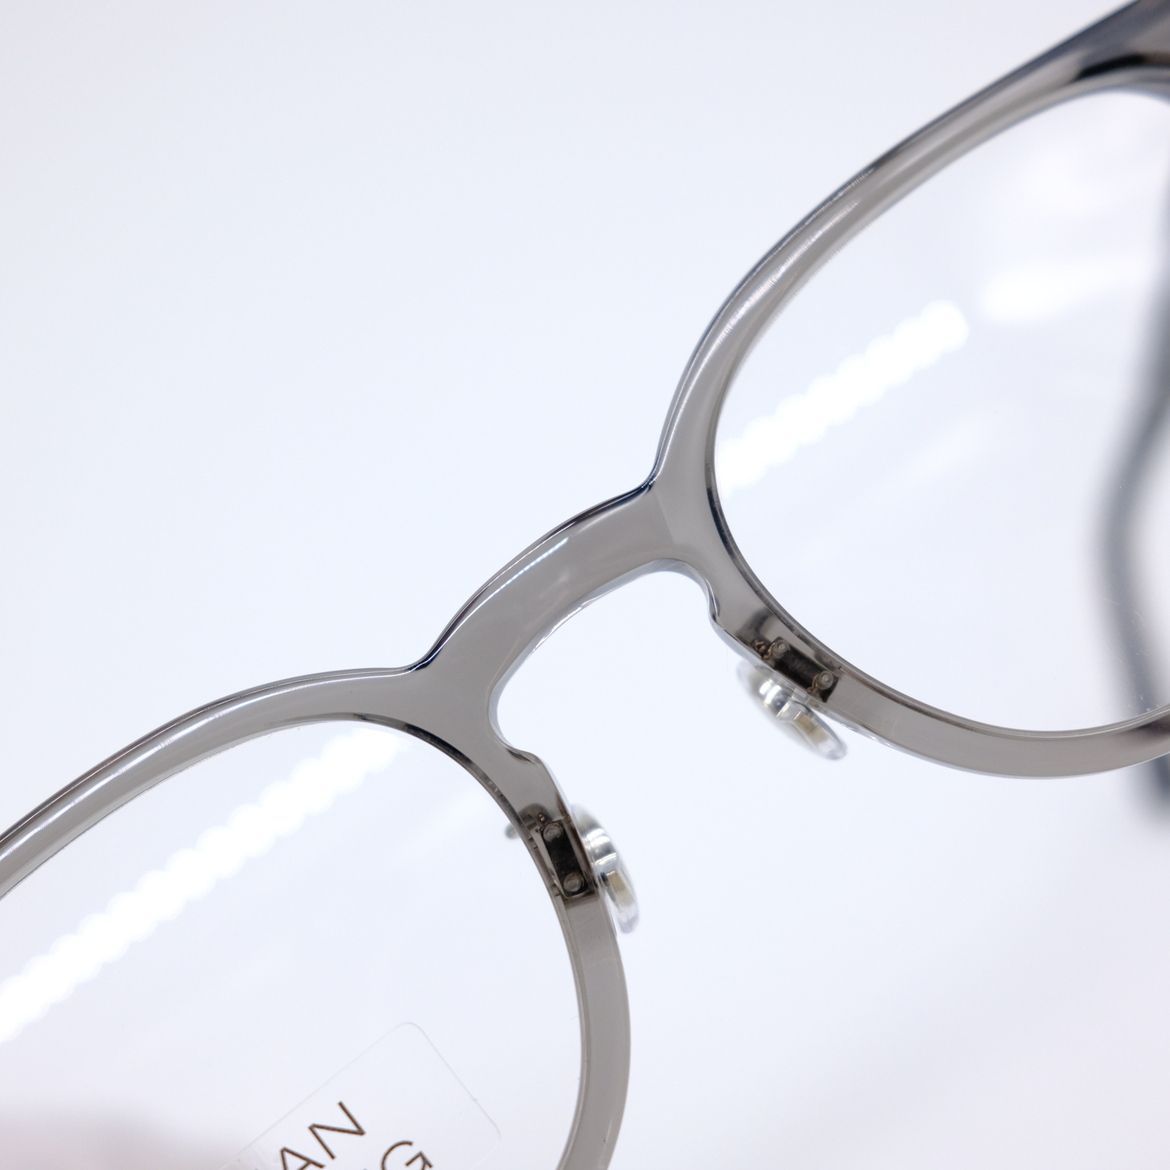 在庫僅少】 ML5174 145 50□21 グレー スケルトン 眼鏡 メガネ